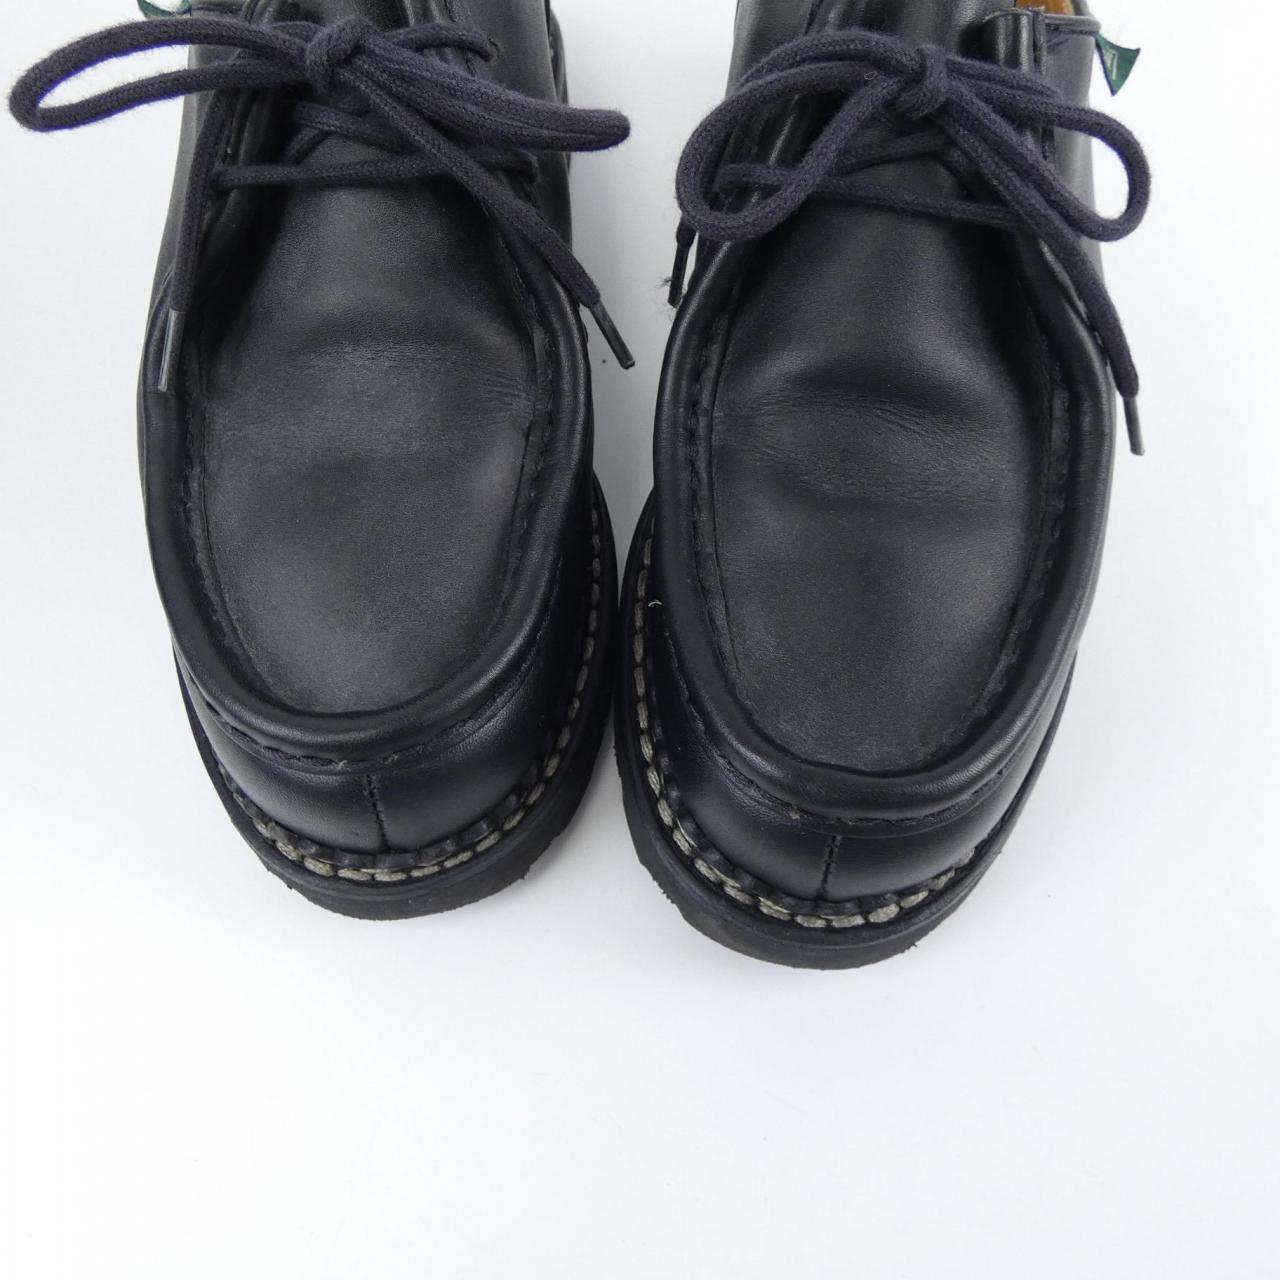 Para boots PARA BOOT shoes